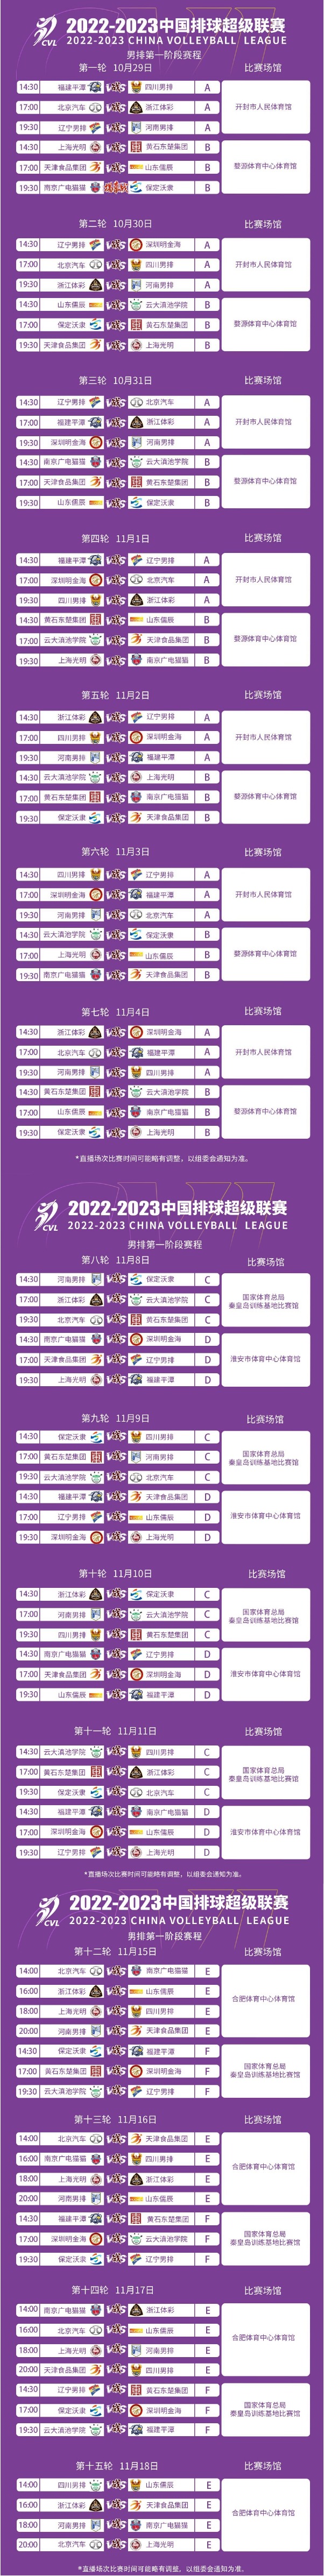 2022-2023赛季中国男子排球超级联赛第一阶段竞赛日程